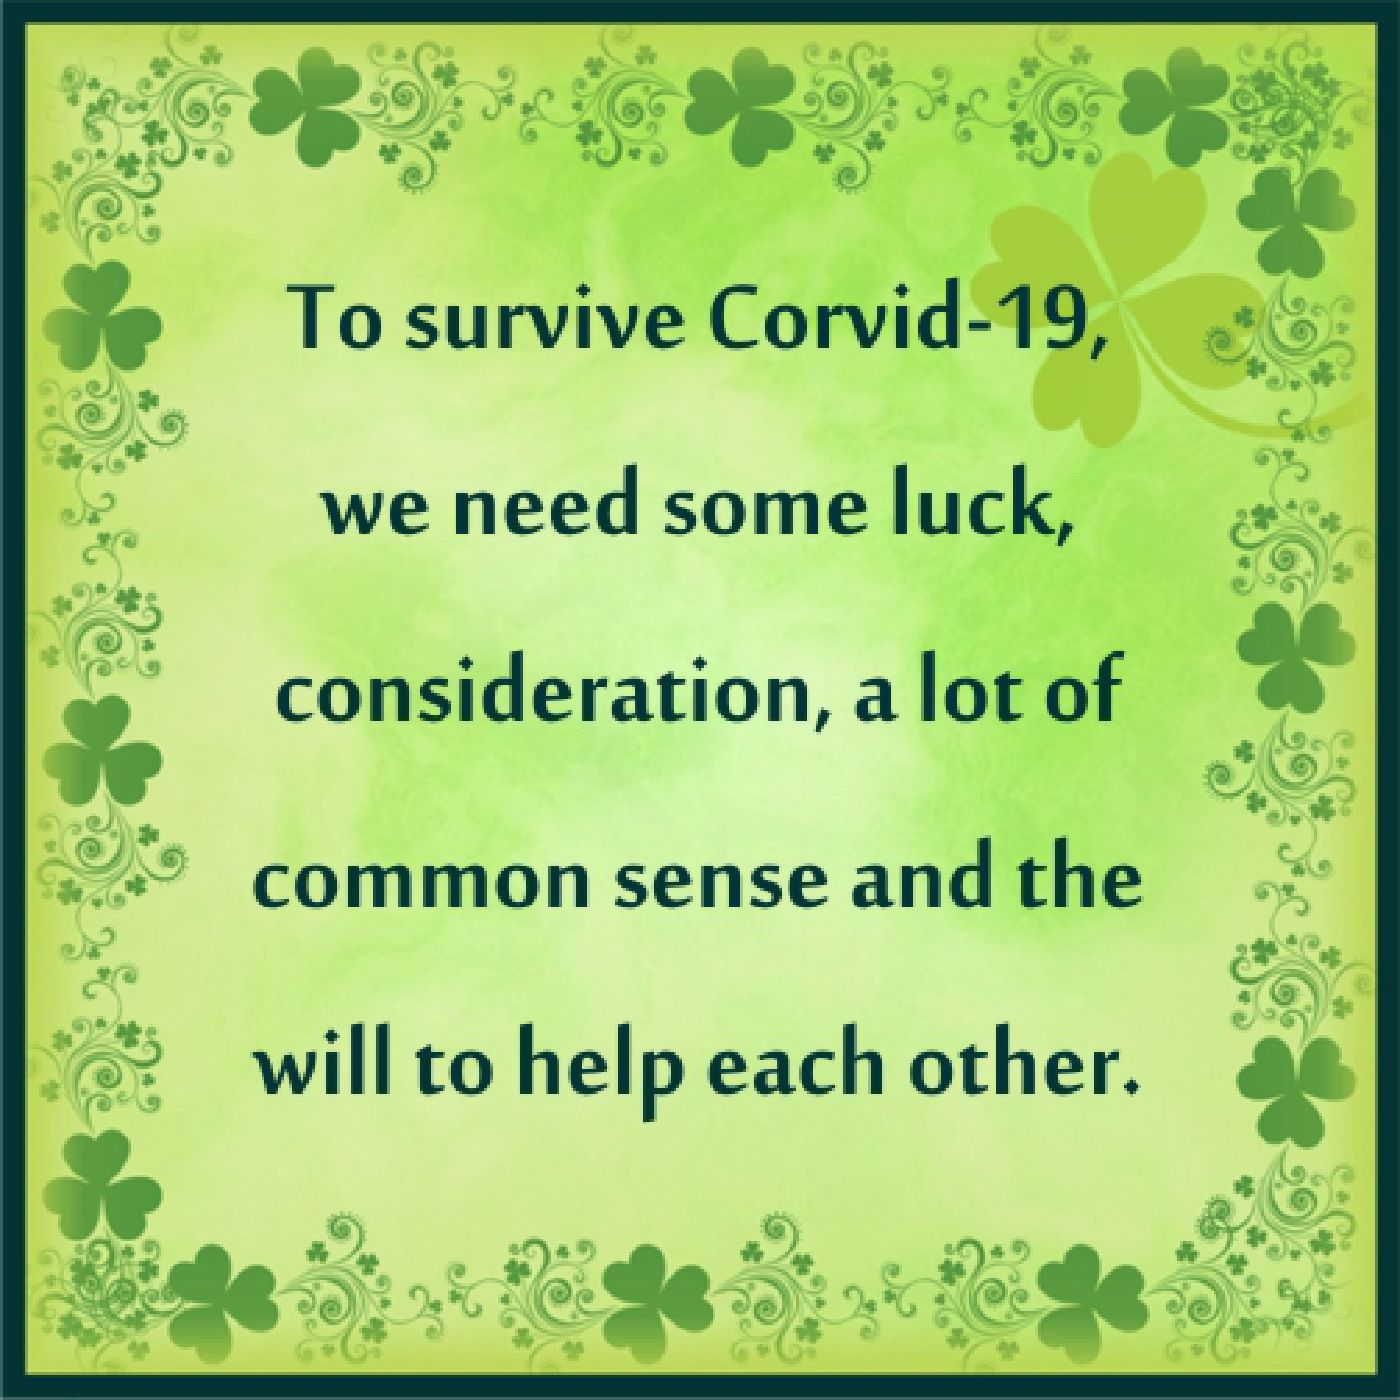 Corvid-19